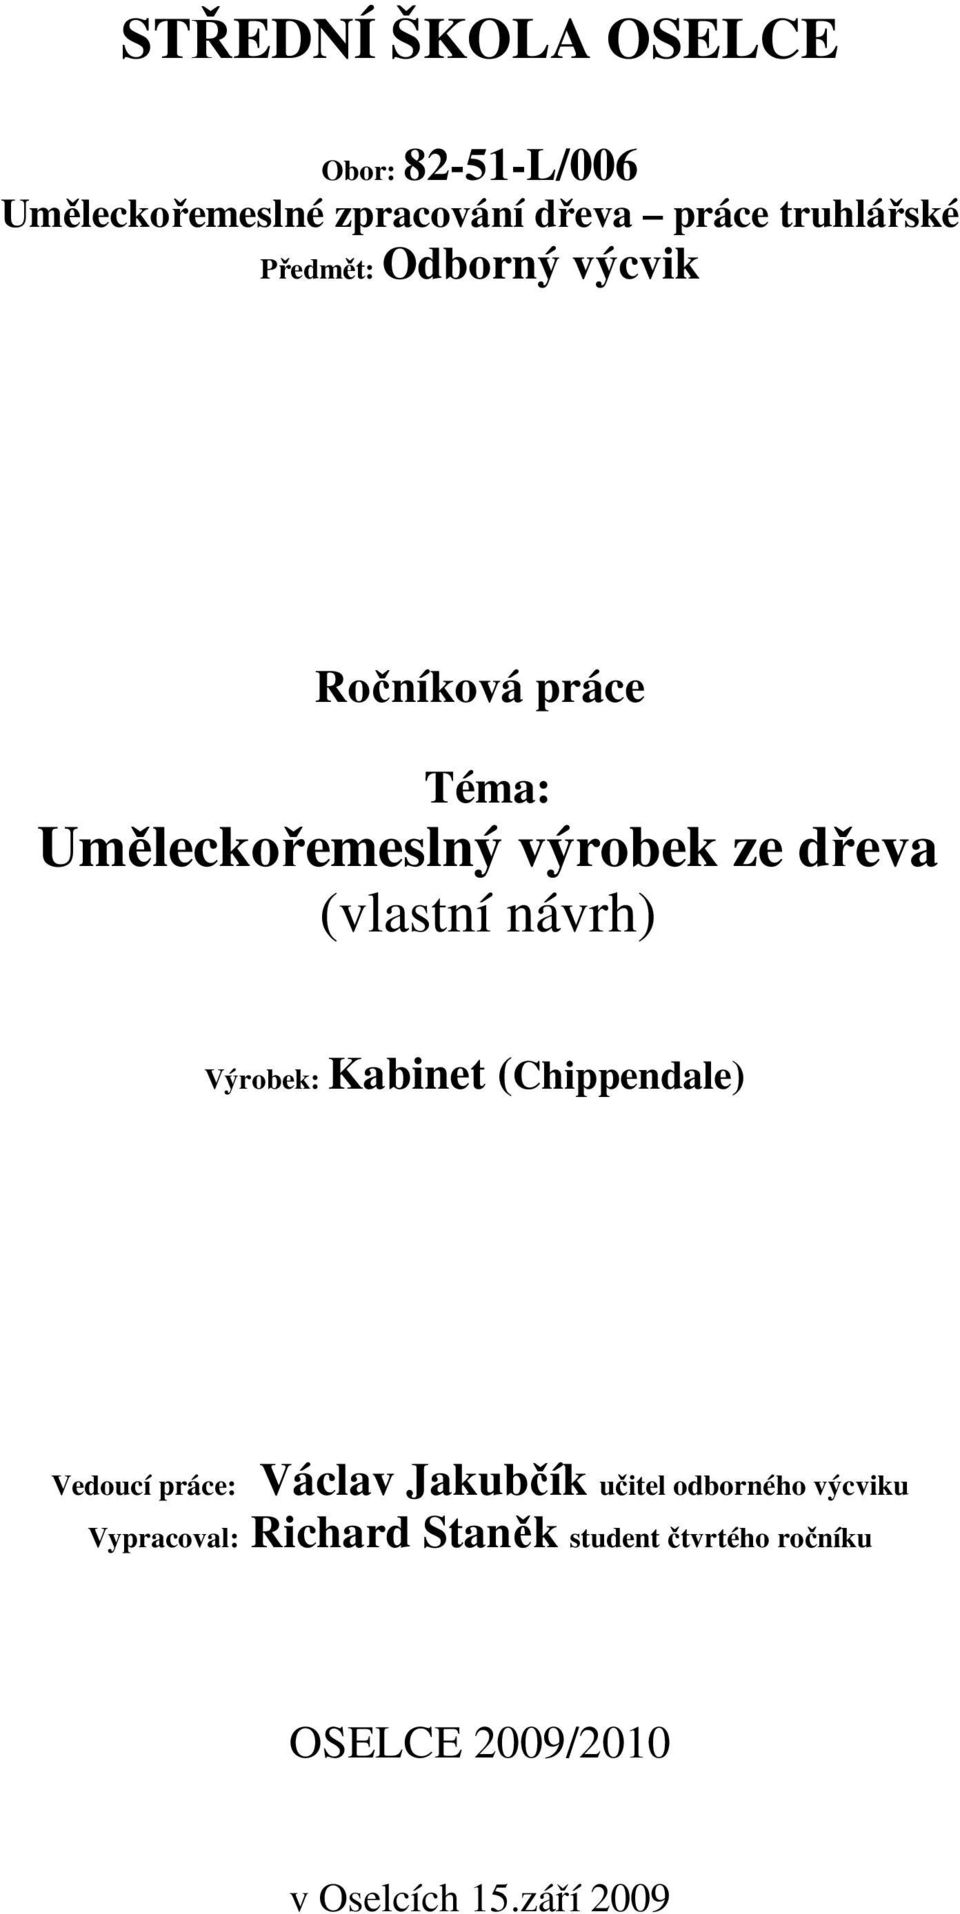 návrh) Výrobek: Kabinet (Chippendale) Vedoucí práce: Václav Jakubčík učitel odborného